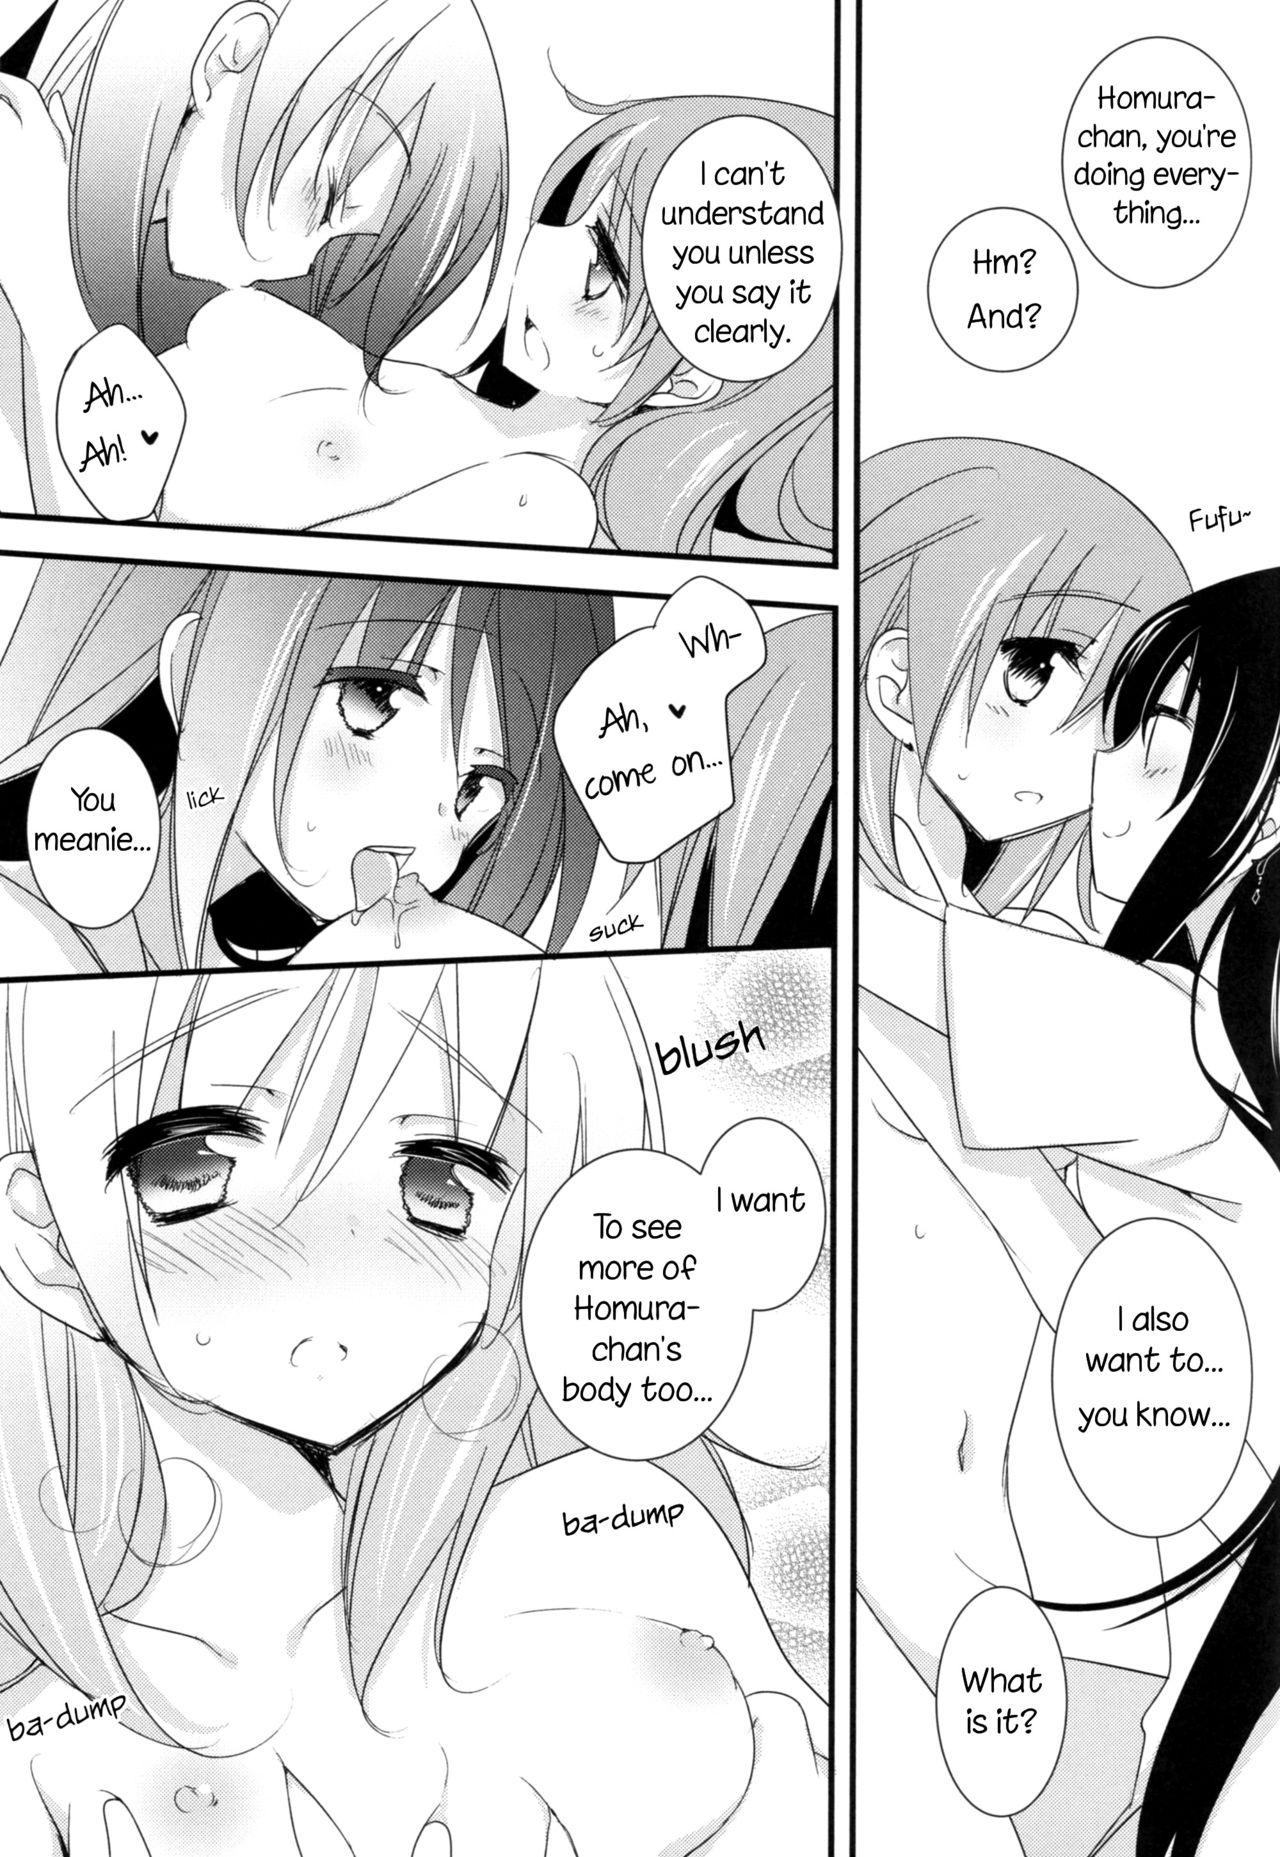 Masturbation Watashi no Kanojo wa Itsudemo Tokubetsu ni Sugoku Sugoku Kawaii | My Girlfriend is Always Super-Duper Cute - Puella magi madoka magica Cocksuckers - Page 10